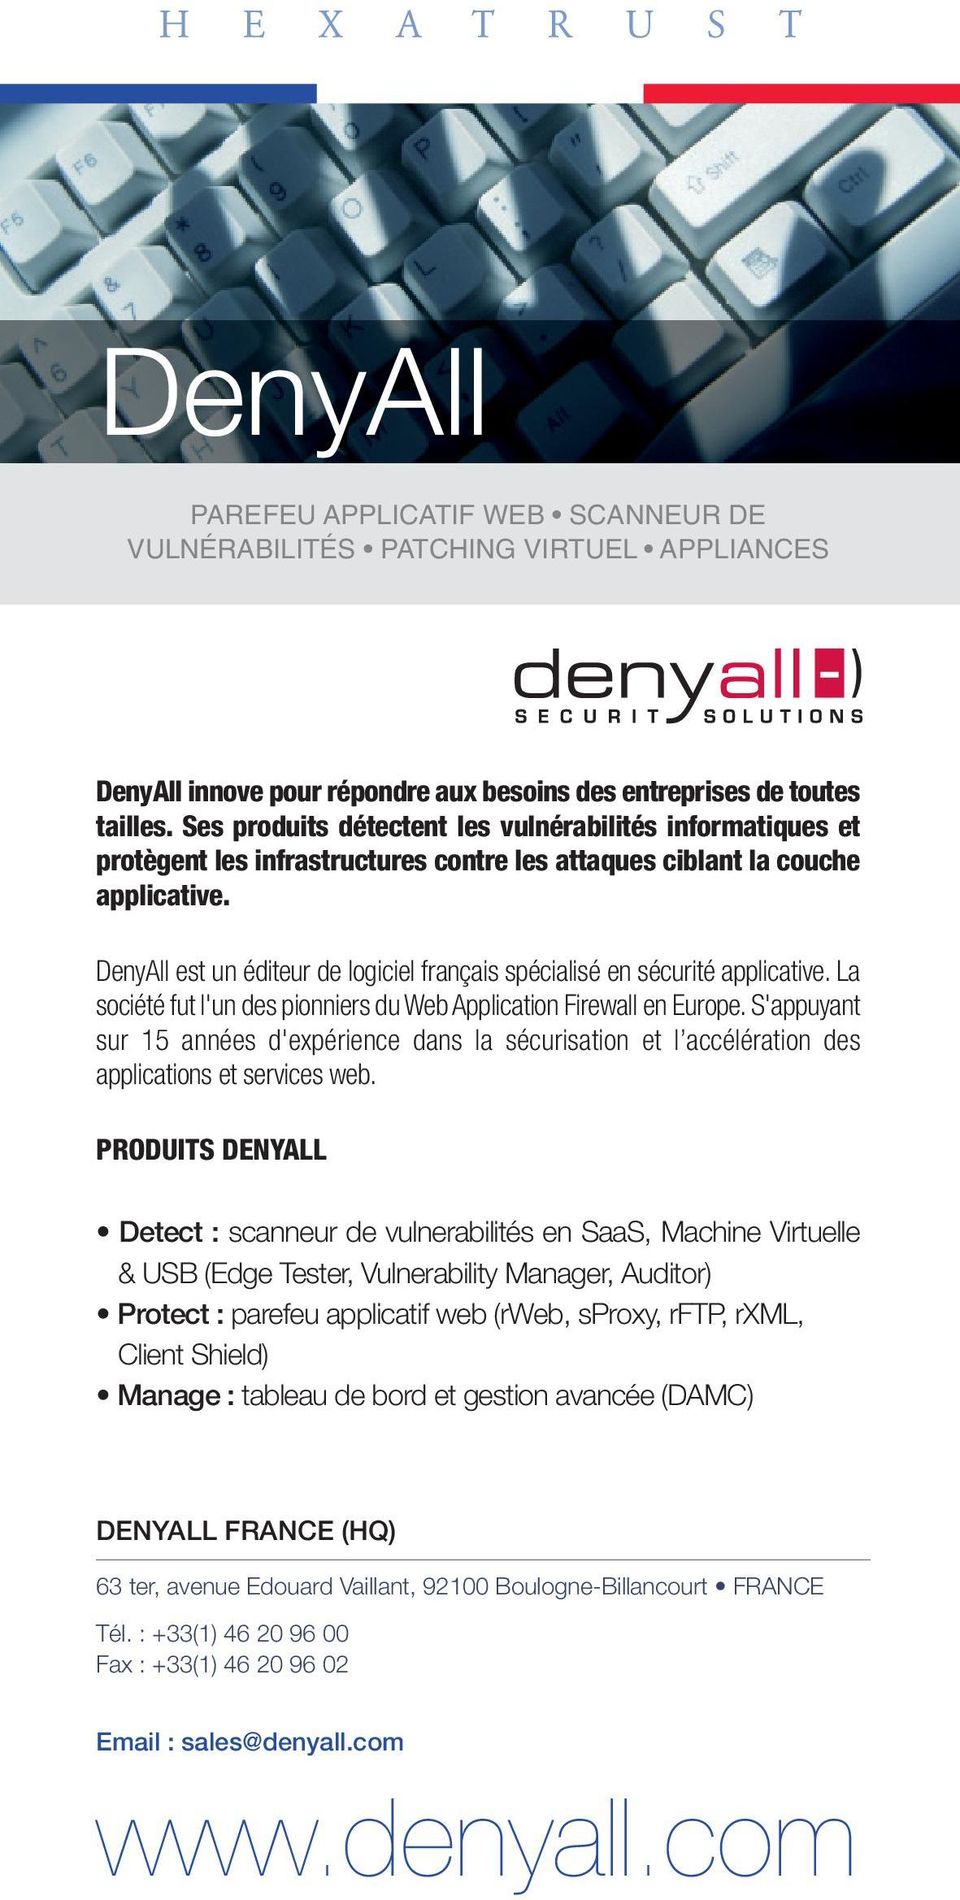 DenyAll est un éditeur de logiciel français spécialisé en sécurité applicative. La société fut l'un des pionniers du Web Application Firewall en Europe.